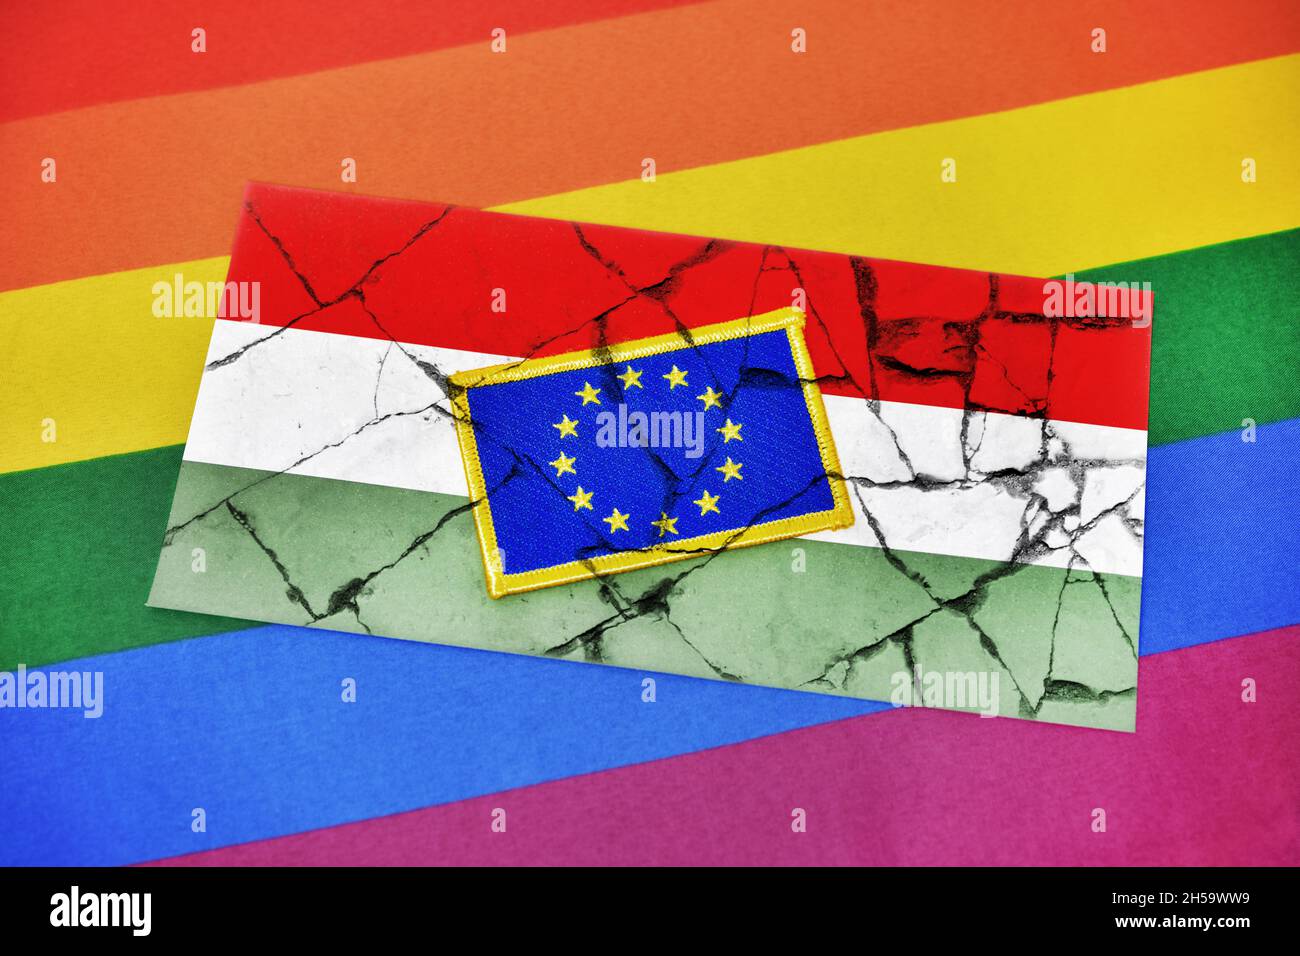 FOTOMONTAGE, Fahnen von eu und Ungarn auf gebrochenem Grund Regenbogenfahne, Streit um ungarisches LGBTQ-Gesetz Foto de stock